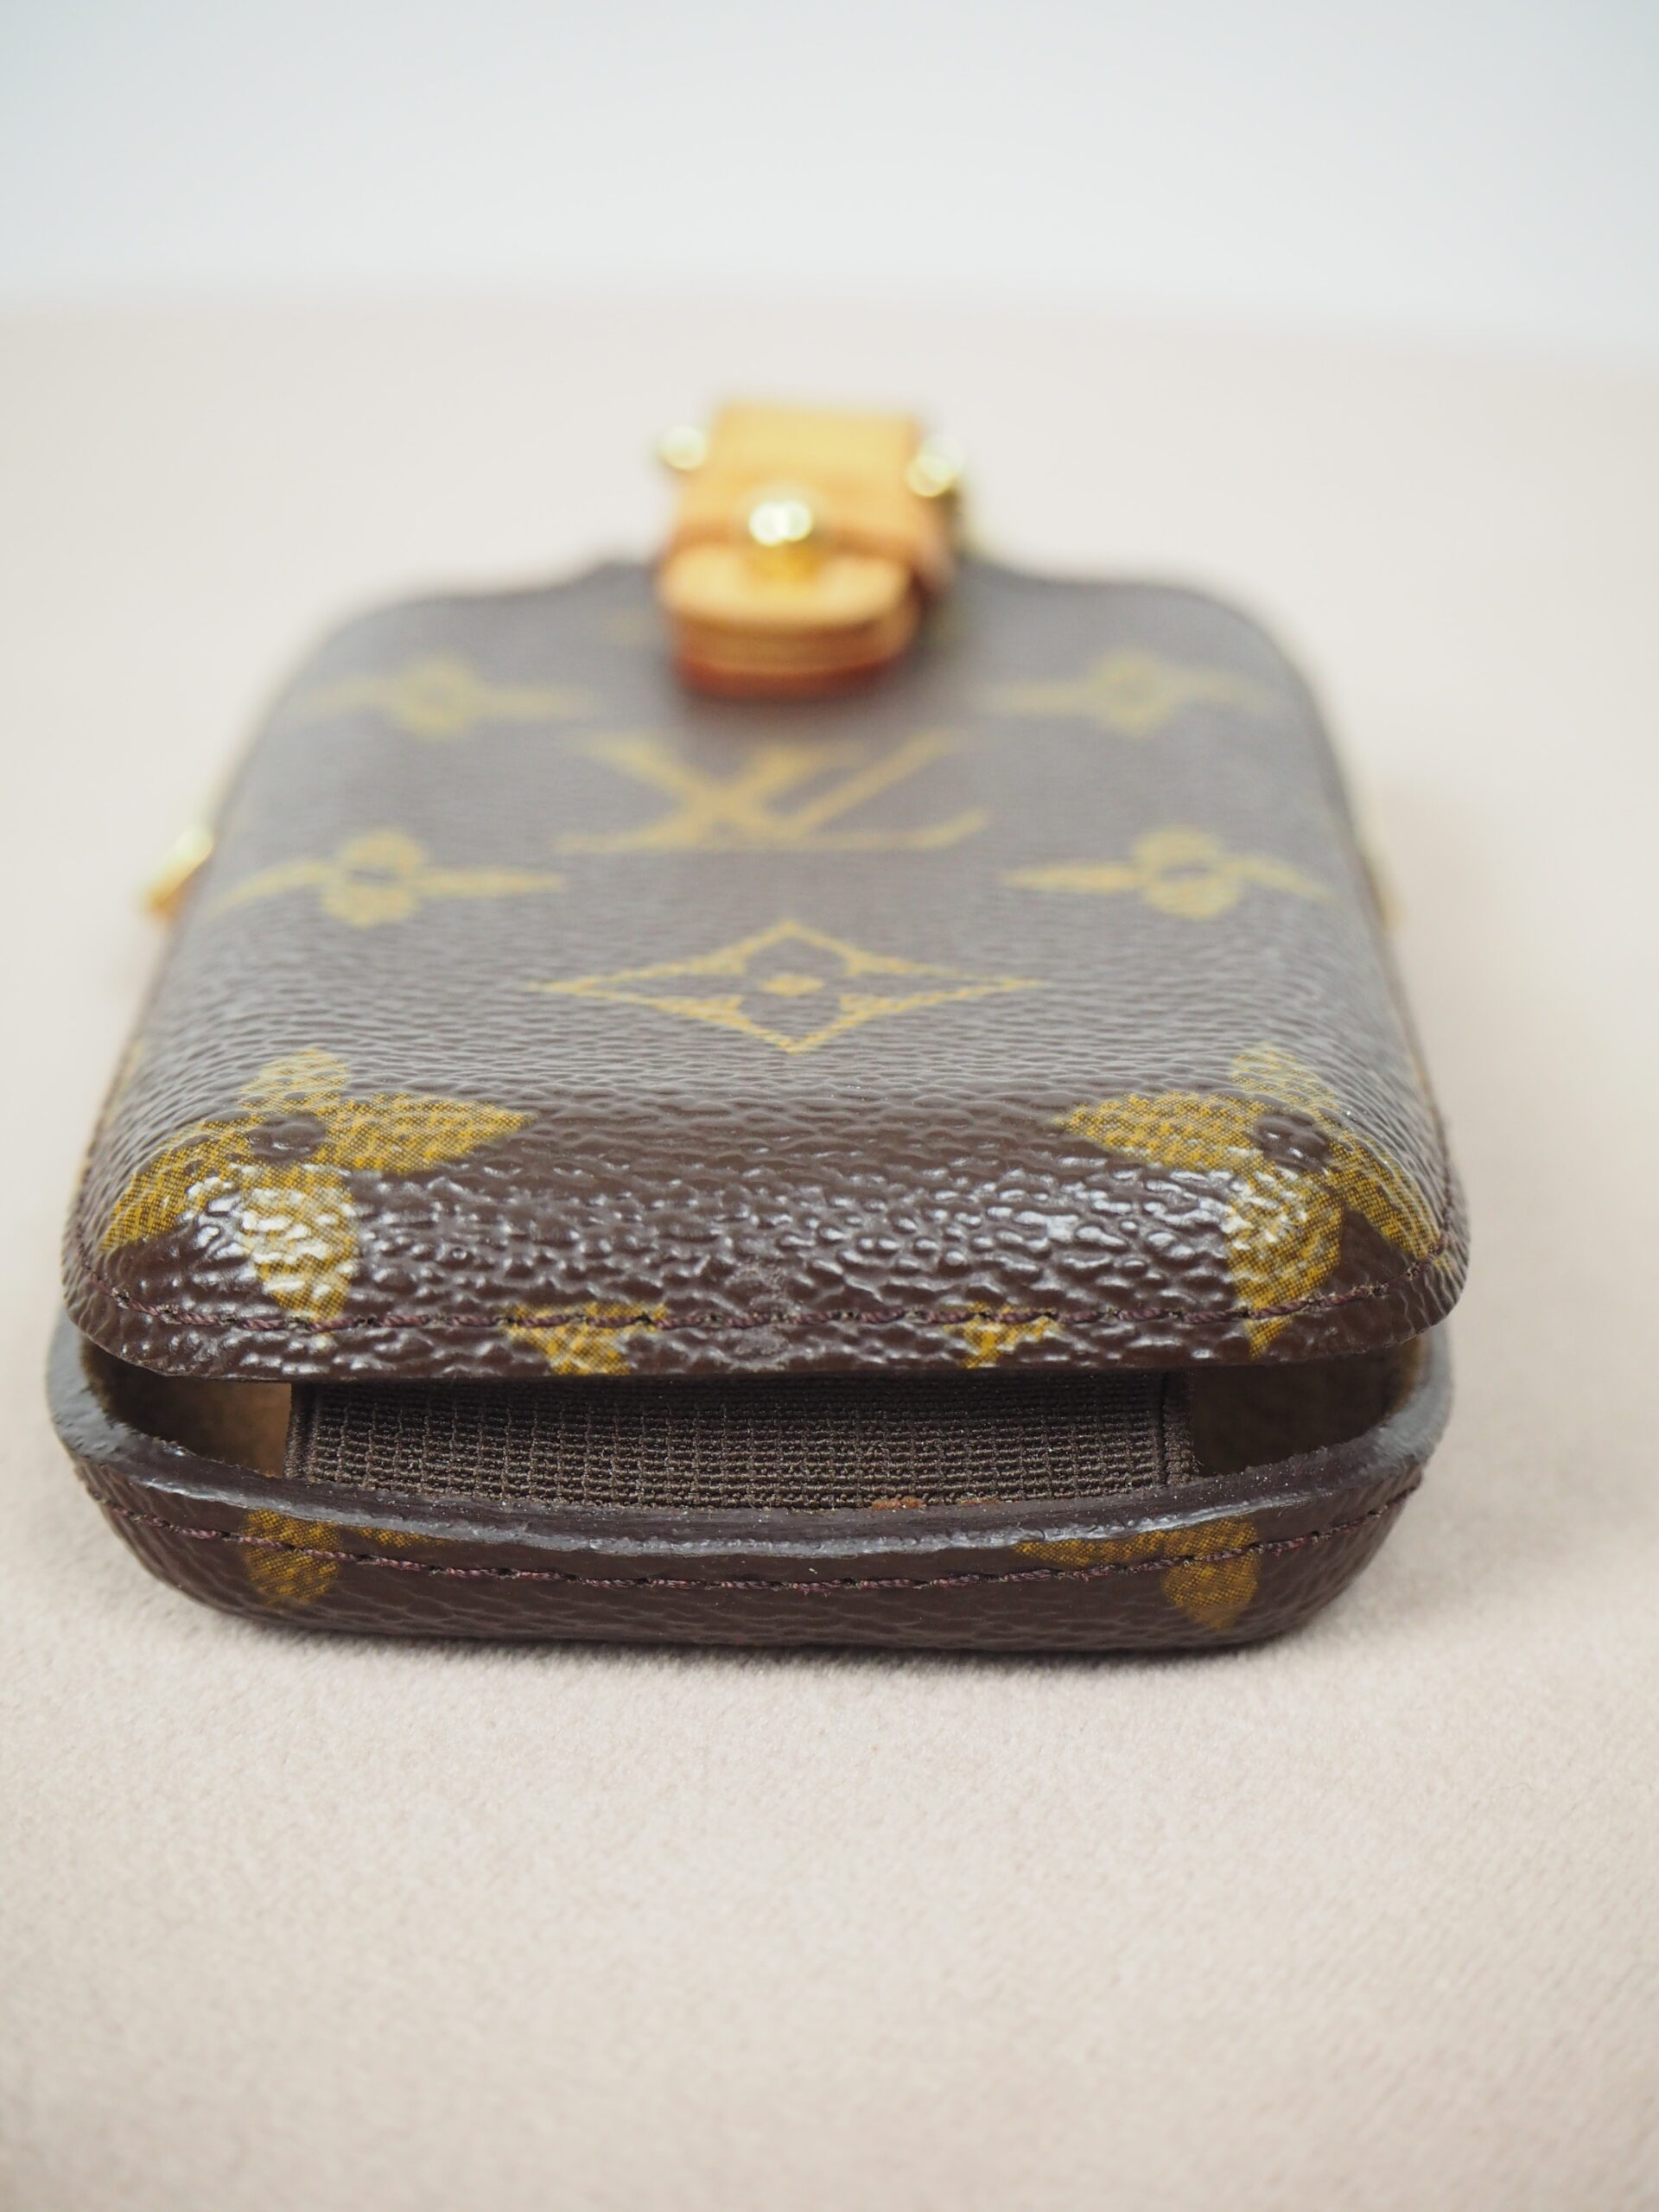 Louis Vuitton Vintage Flip Phone Case - Brown Other, Accessories -  LOU753643